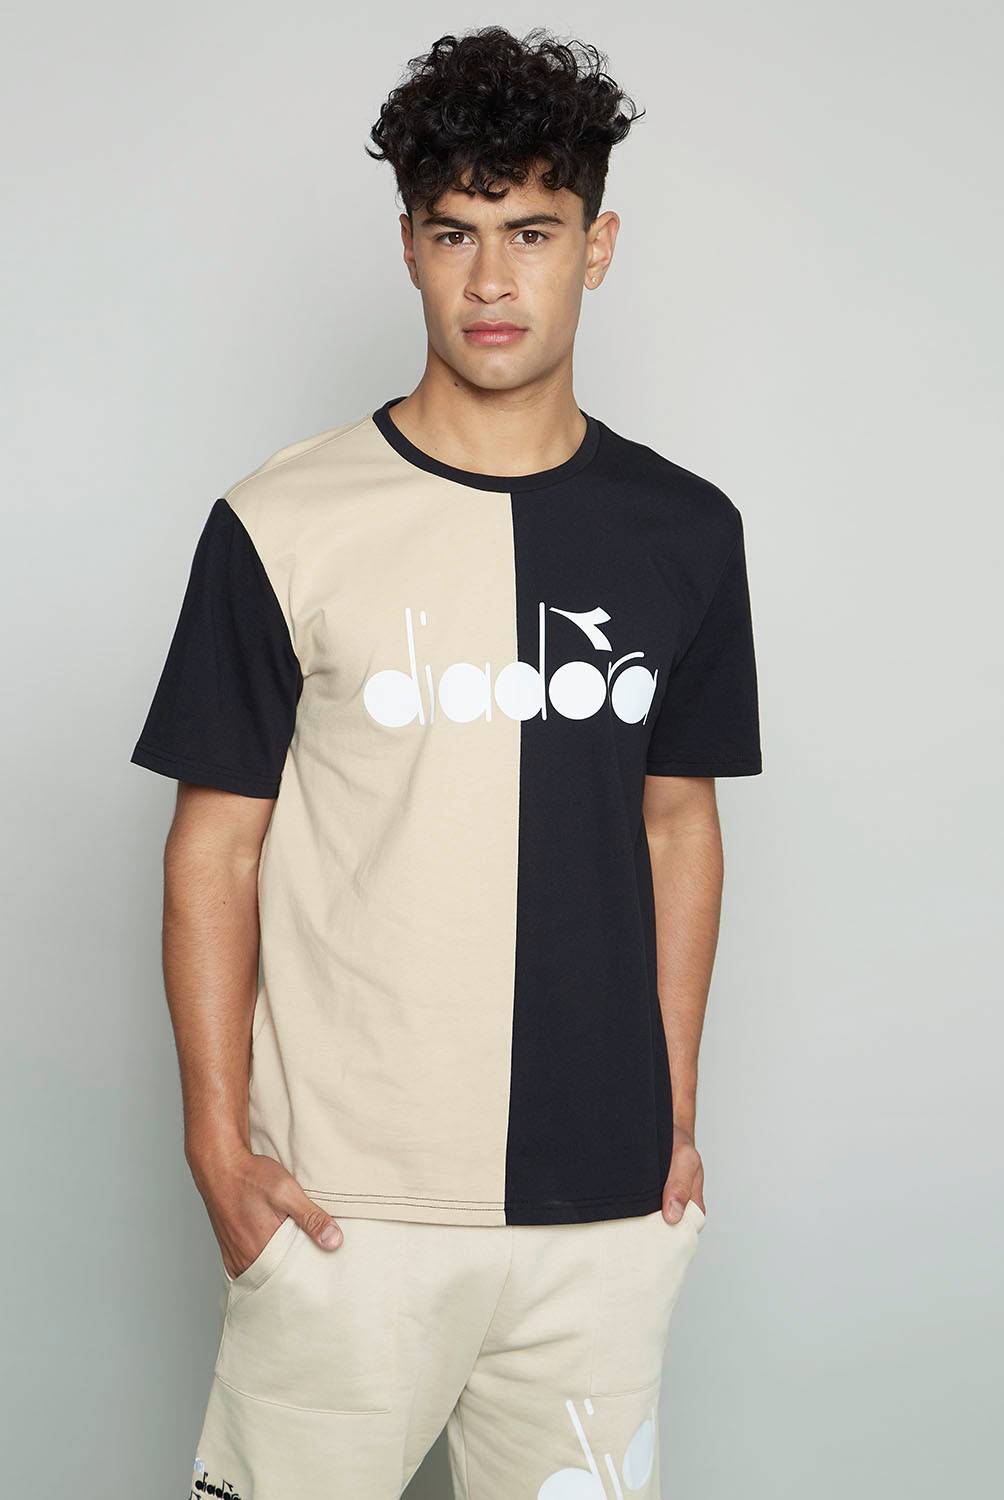 DIADORA - Camiseta para Hombre de Algodón Diadora